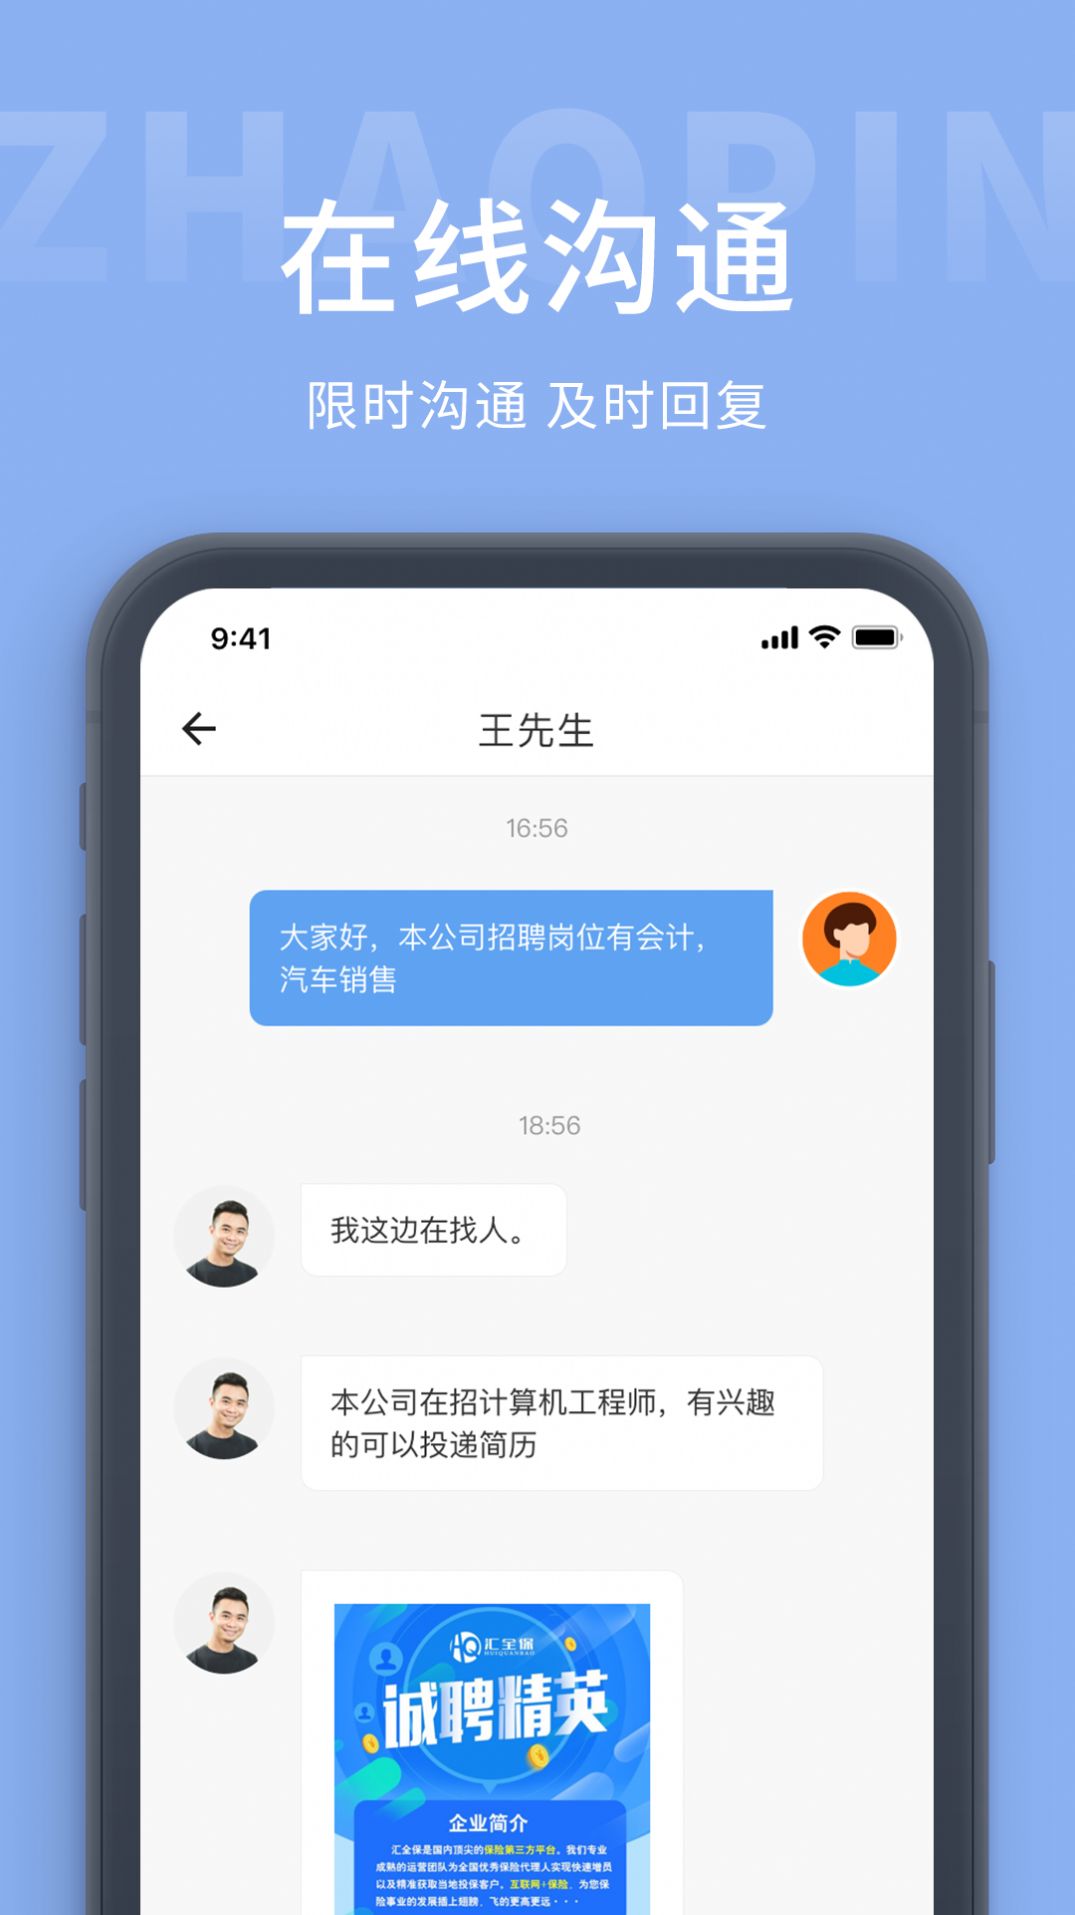 广西招工网app官方版截图1: